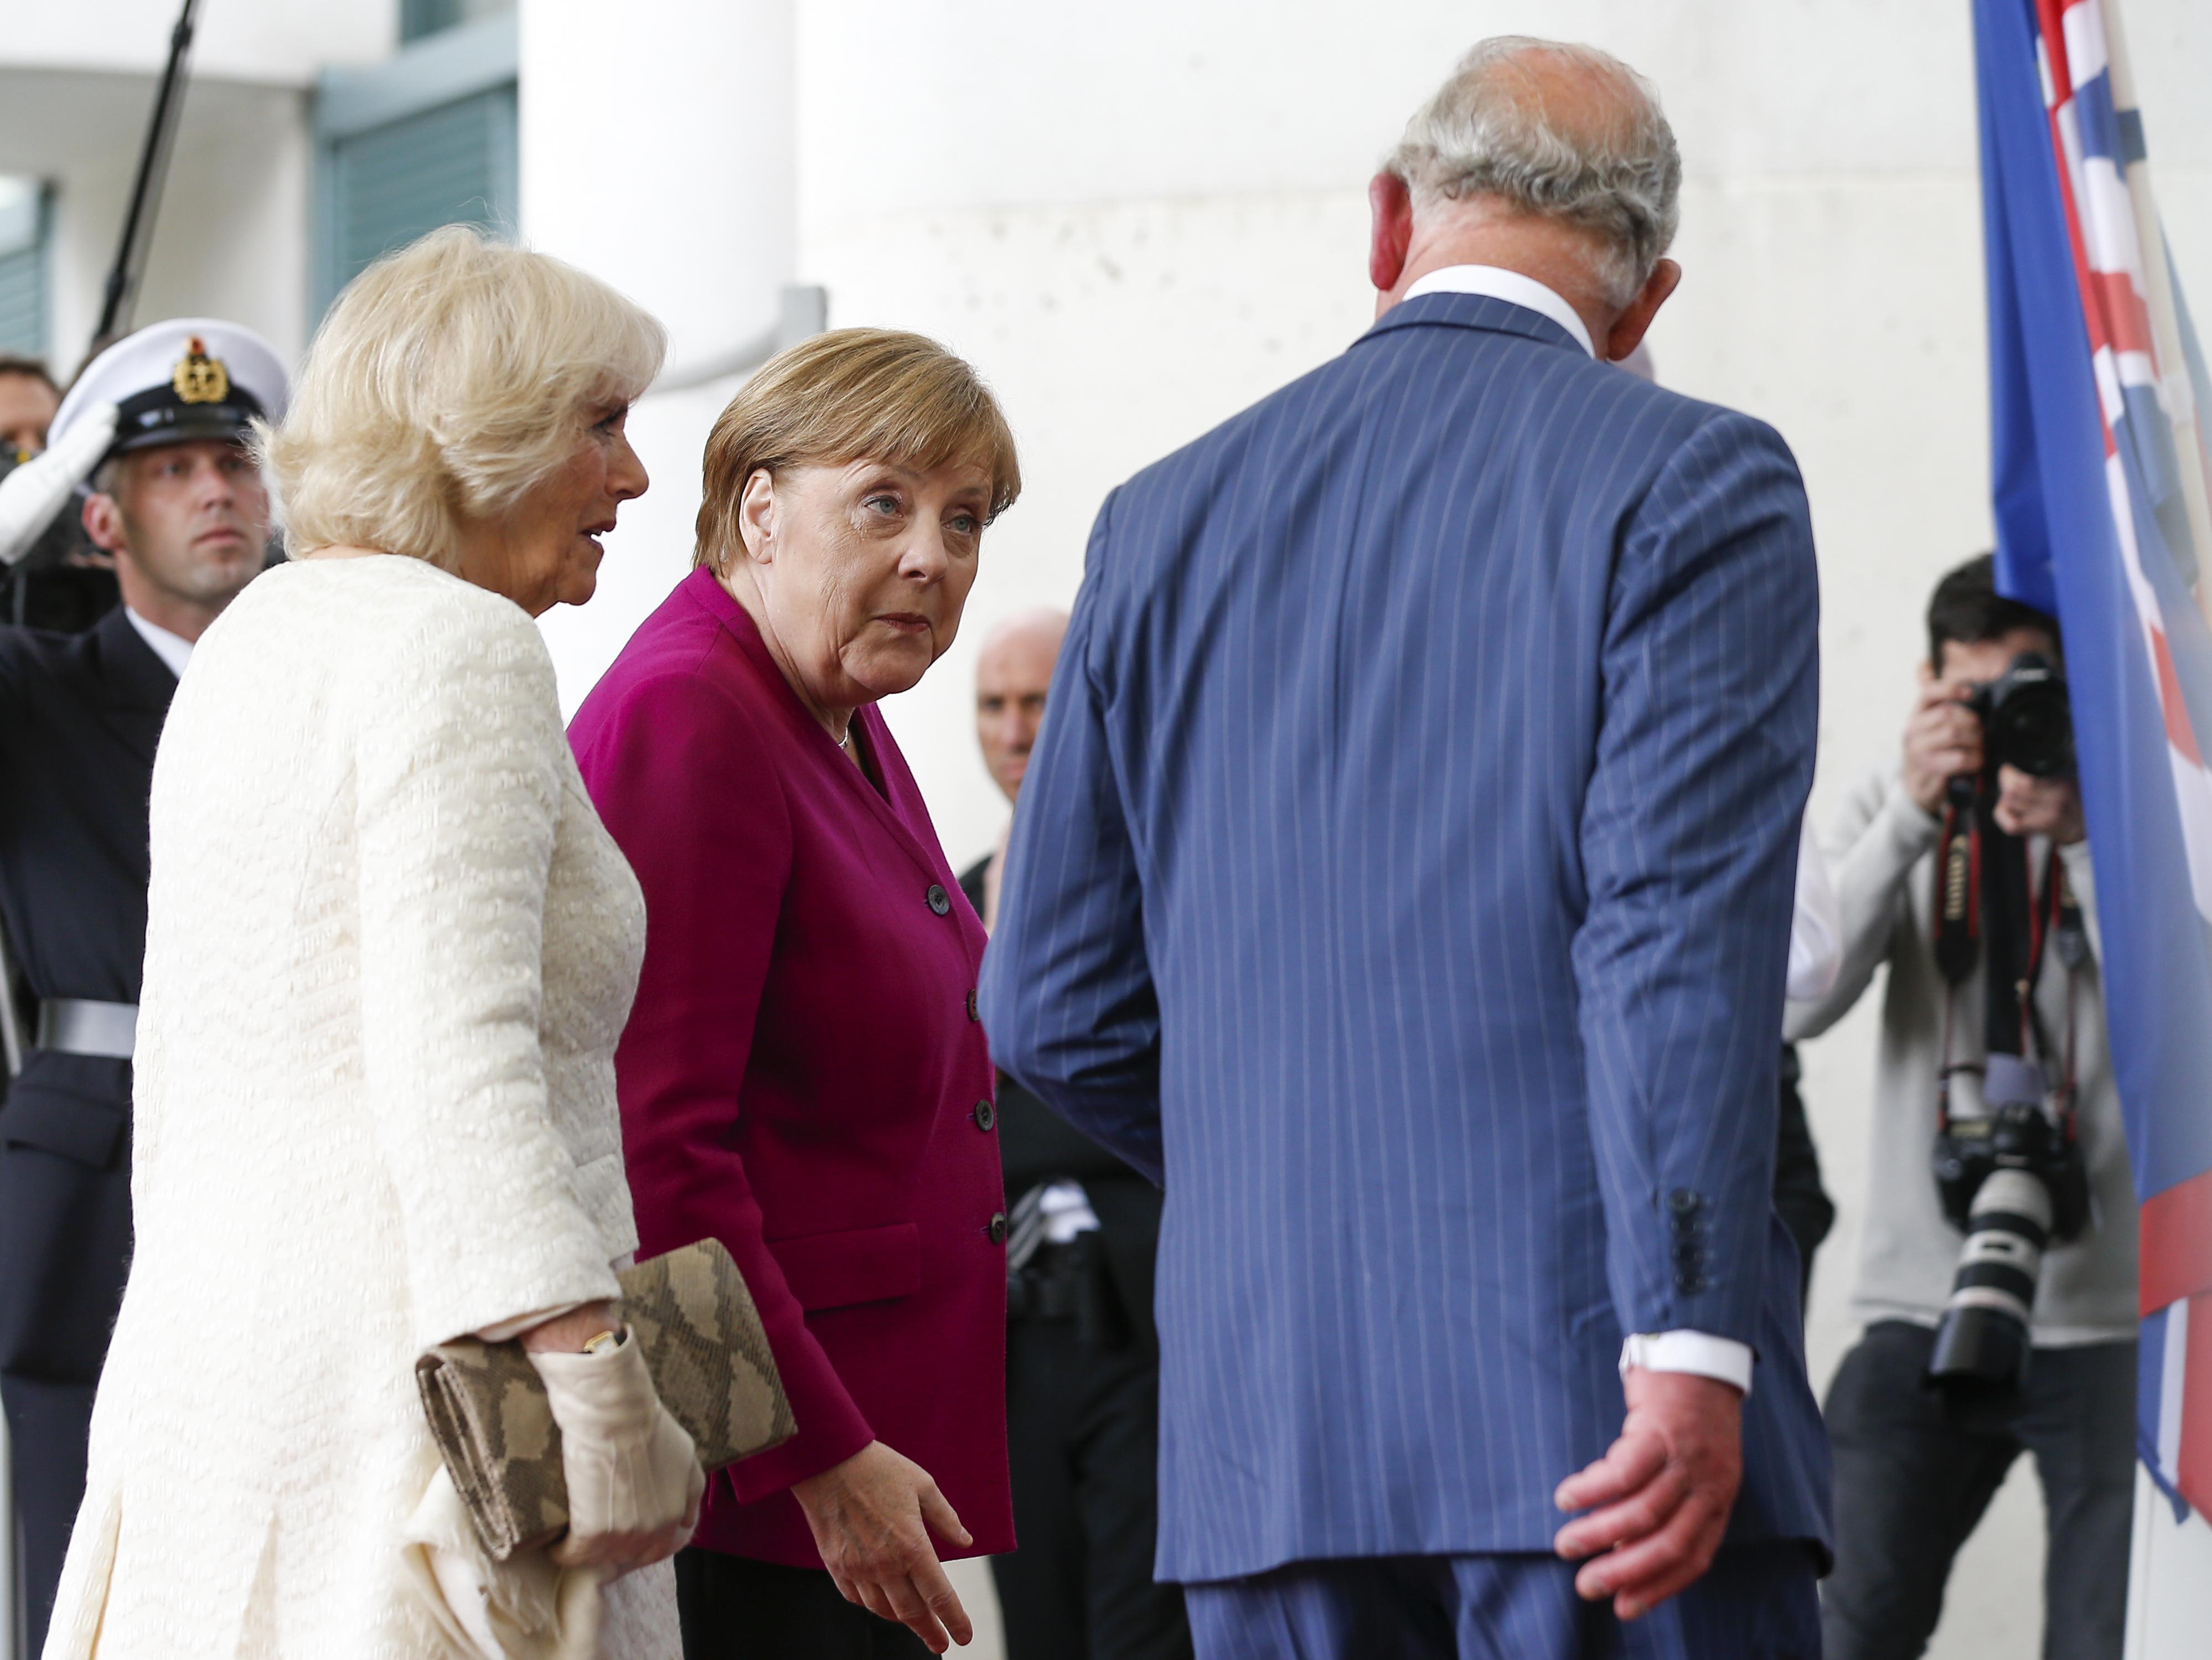 İngiltere Veliaht Prensi Charles ve eşi Camilladan Merkele ziyaret